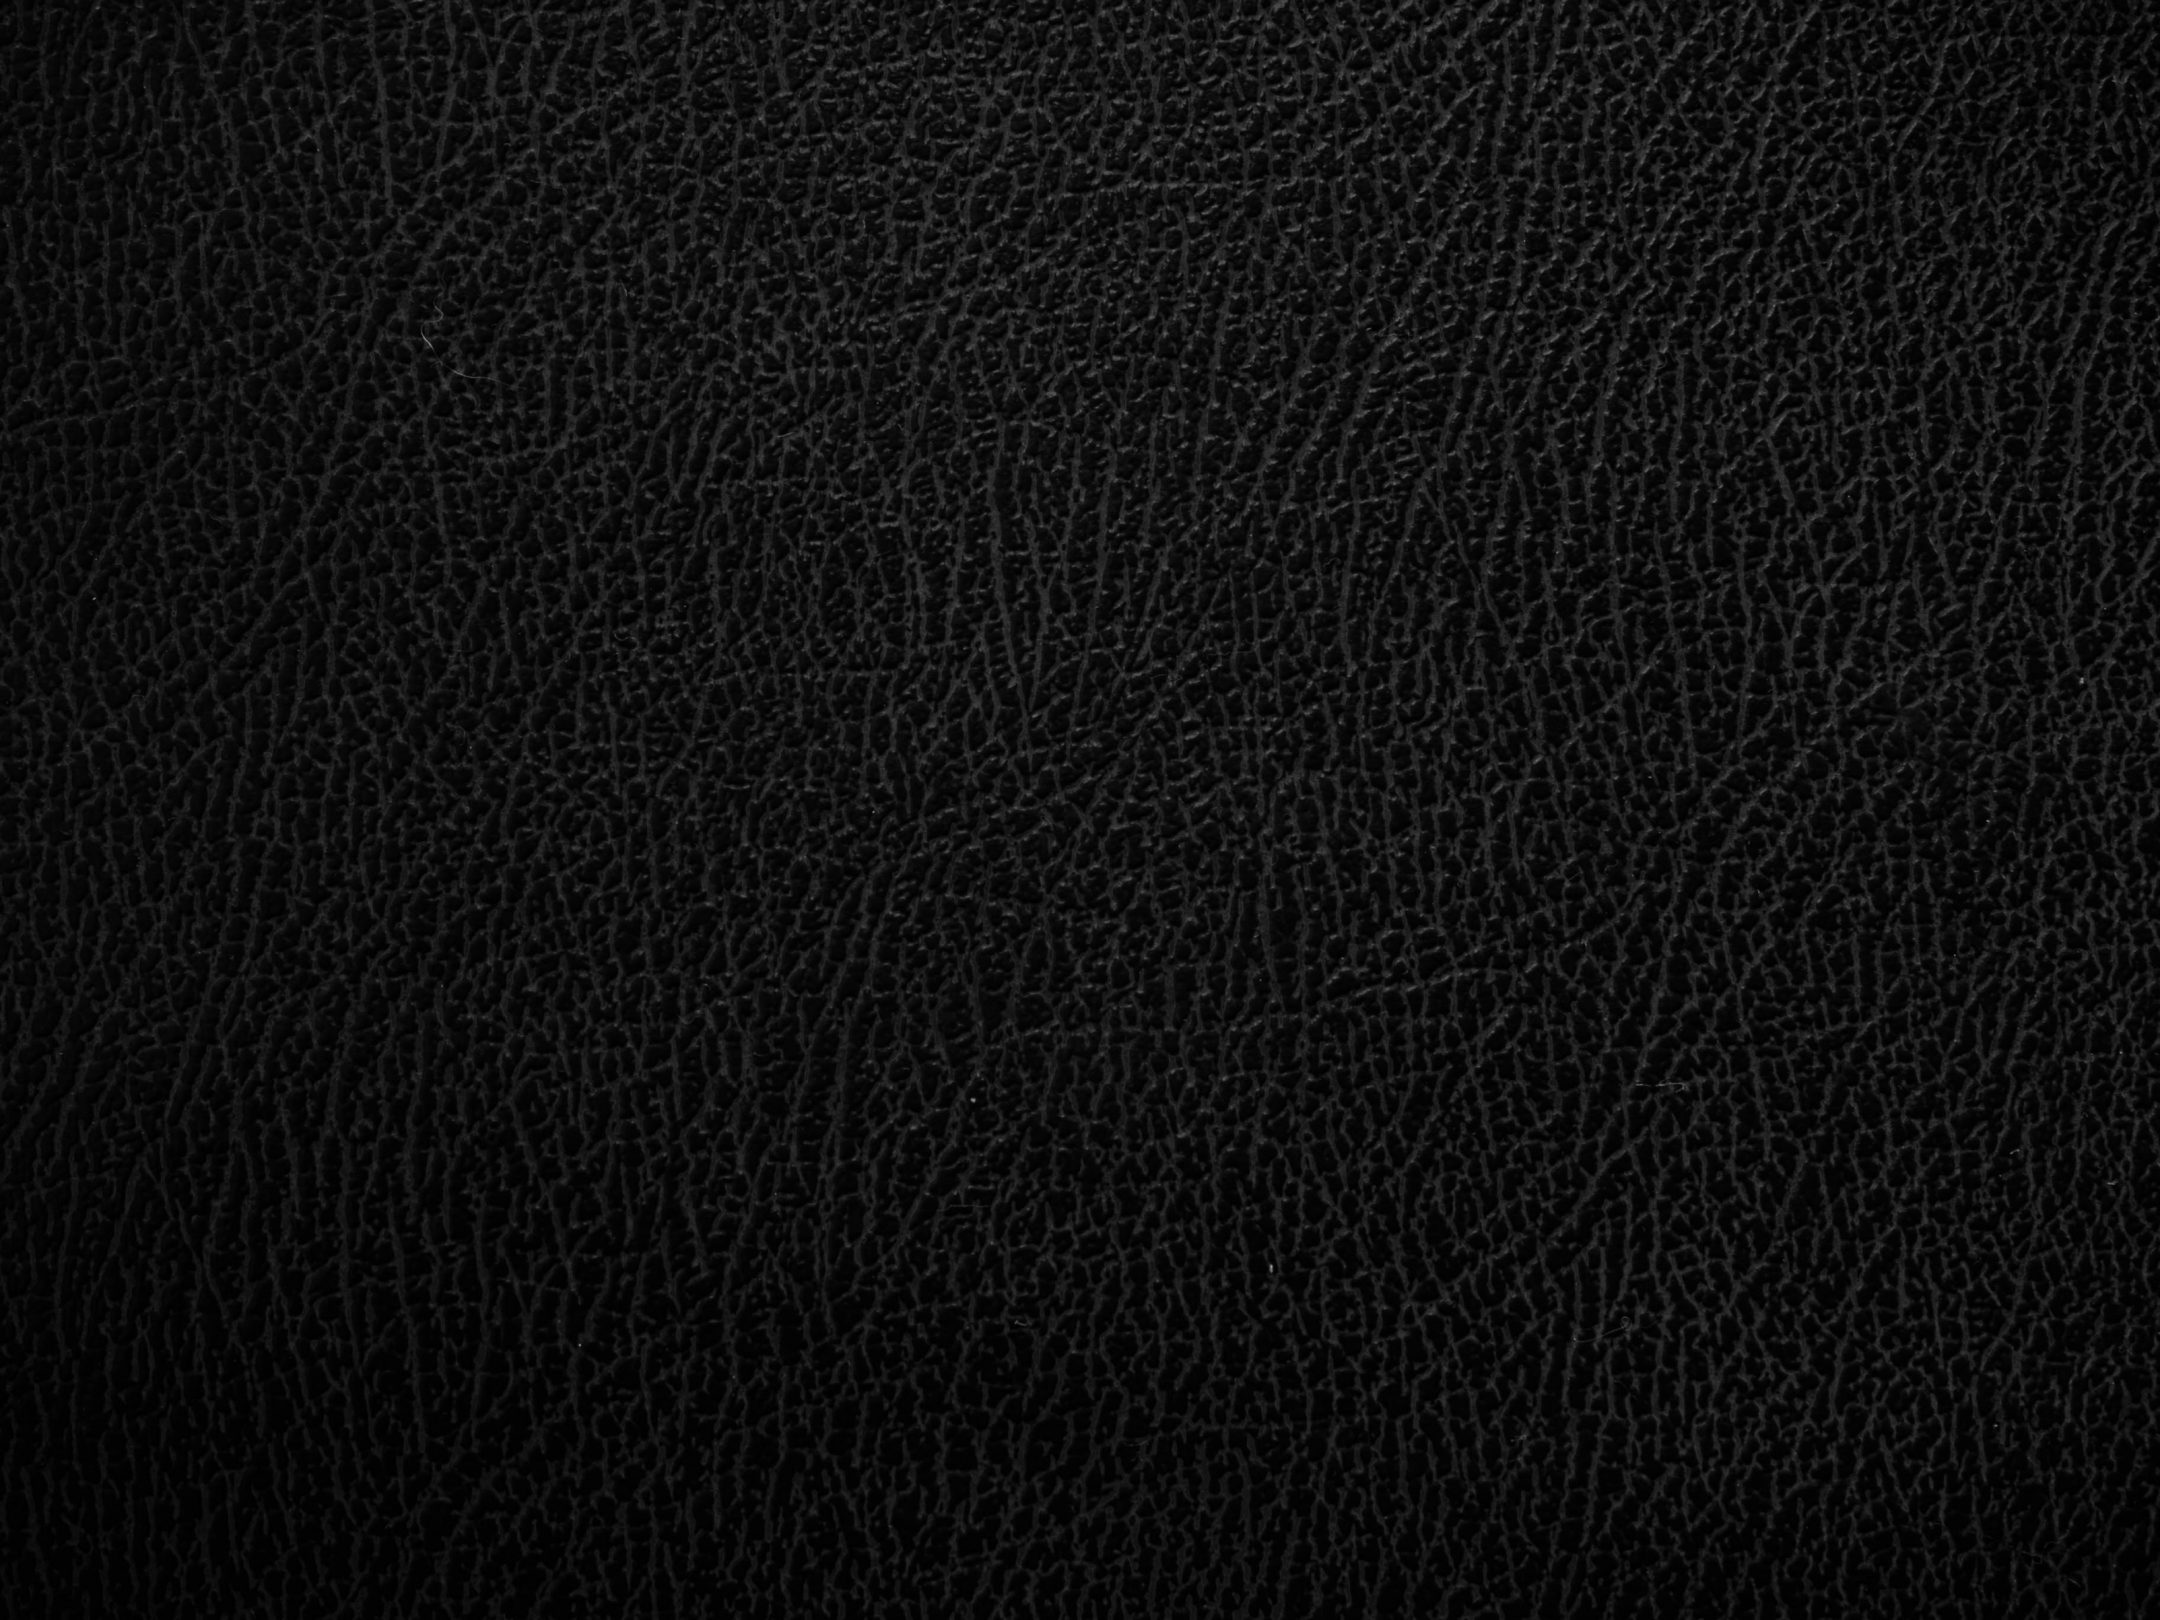 2160x1620 iPad wallpaper 4k Black Leather Texture iPad Wallpaper 2160x1620 pixels resolution